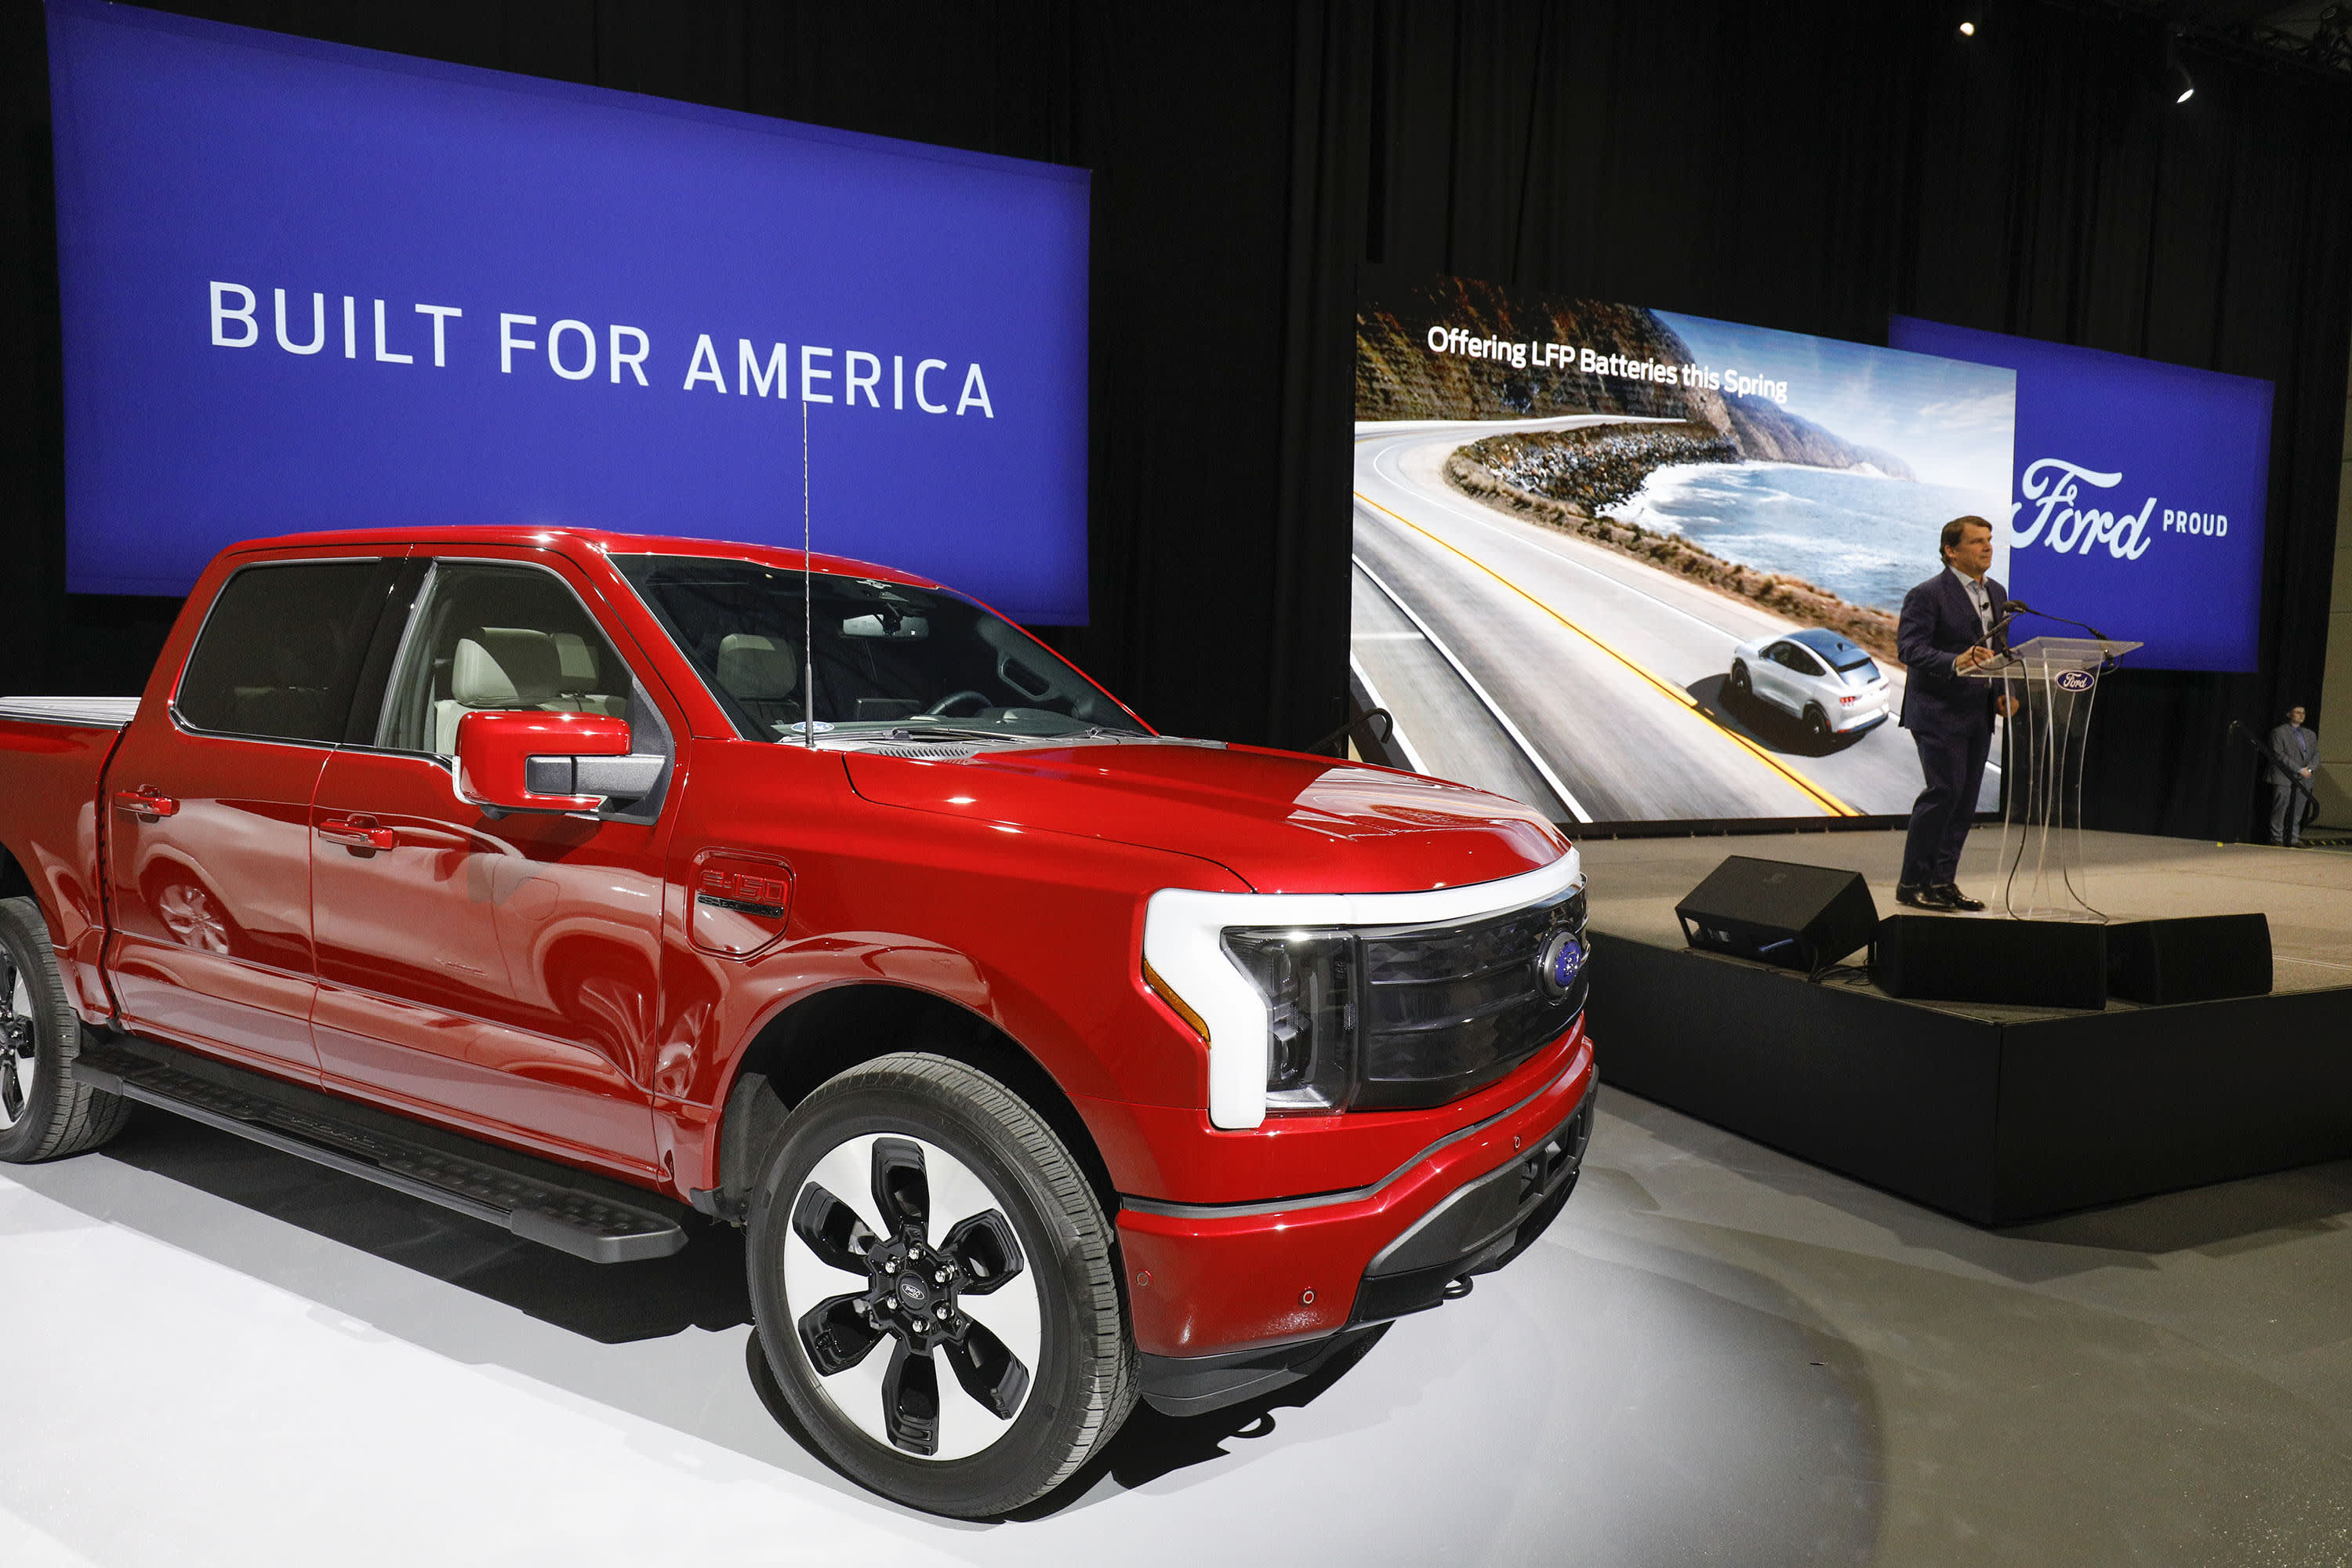 Ford zmniejsza wielkość fabryki akumulatorów do pojazdów elektrycznych w Michigan